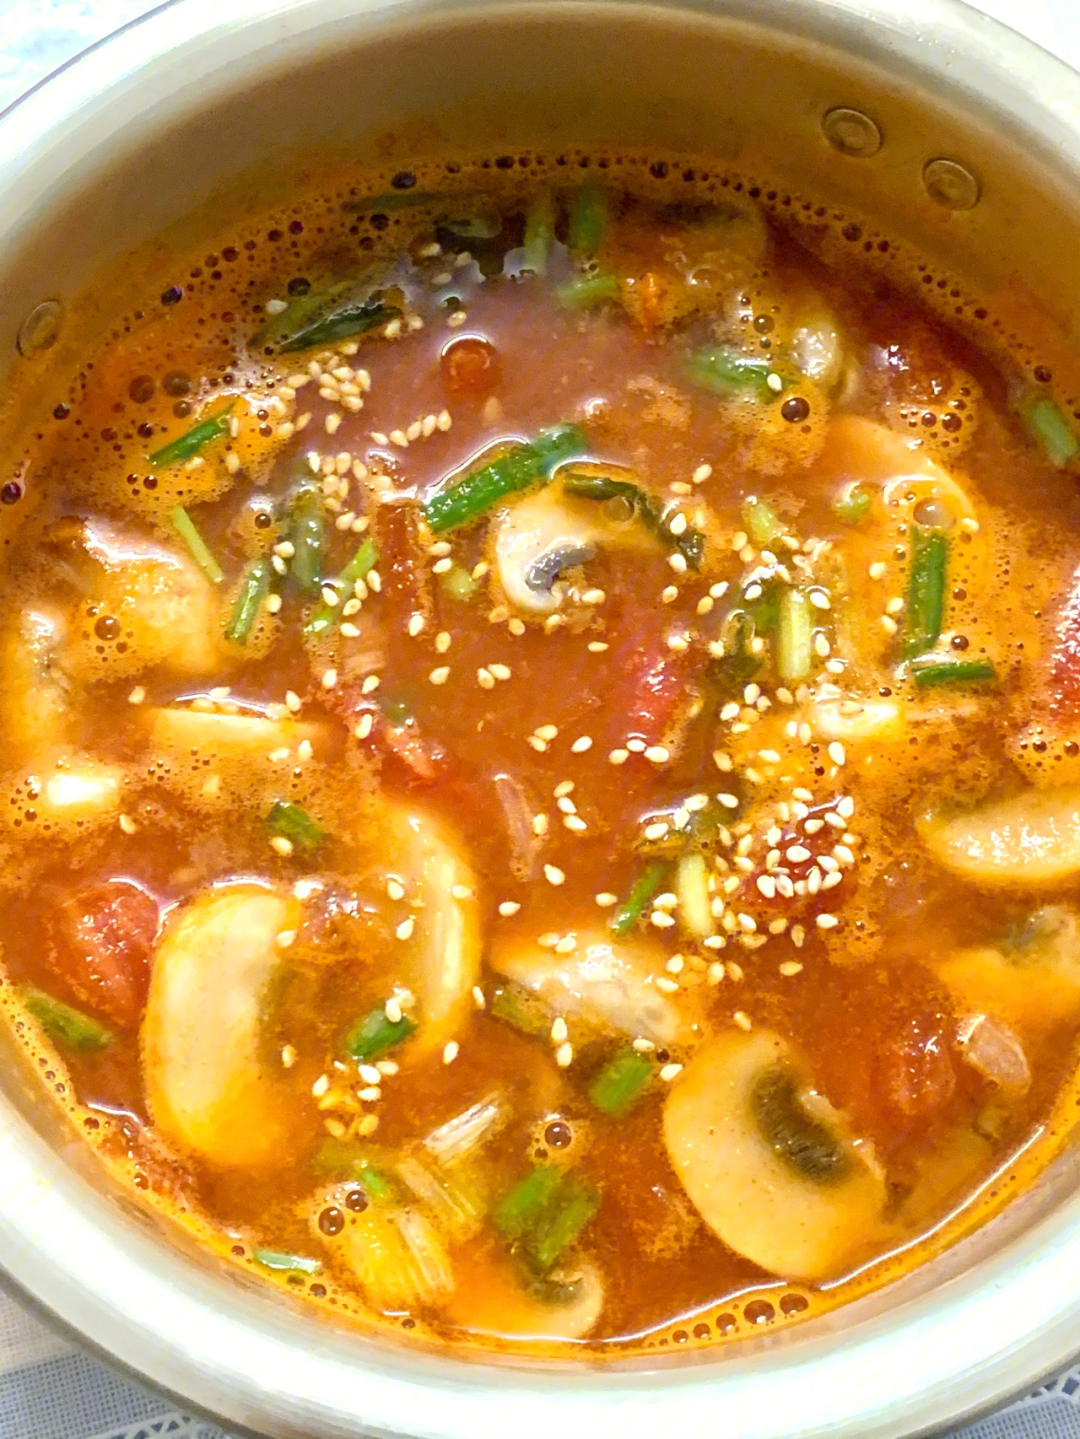 好喝就叫韩式番茄酸辣汤吧真的开胃低卡